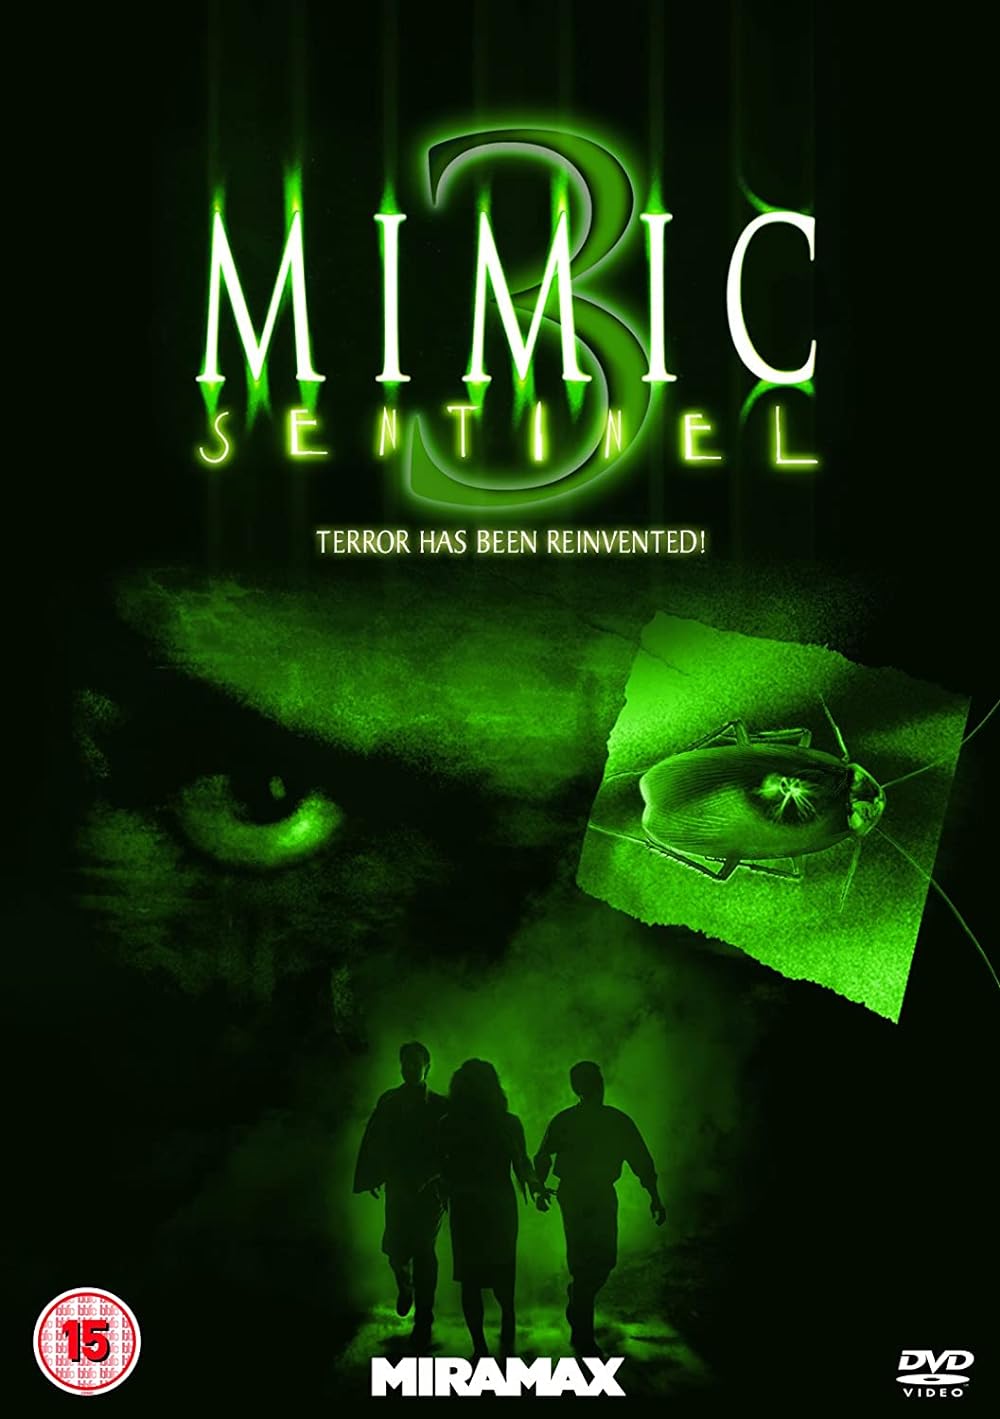 Mimic: Sentinel (2003) 192Kbps 23.976Fps 48Khz 2.0Ch DVD Turkish Audio TAC